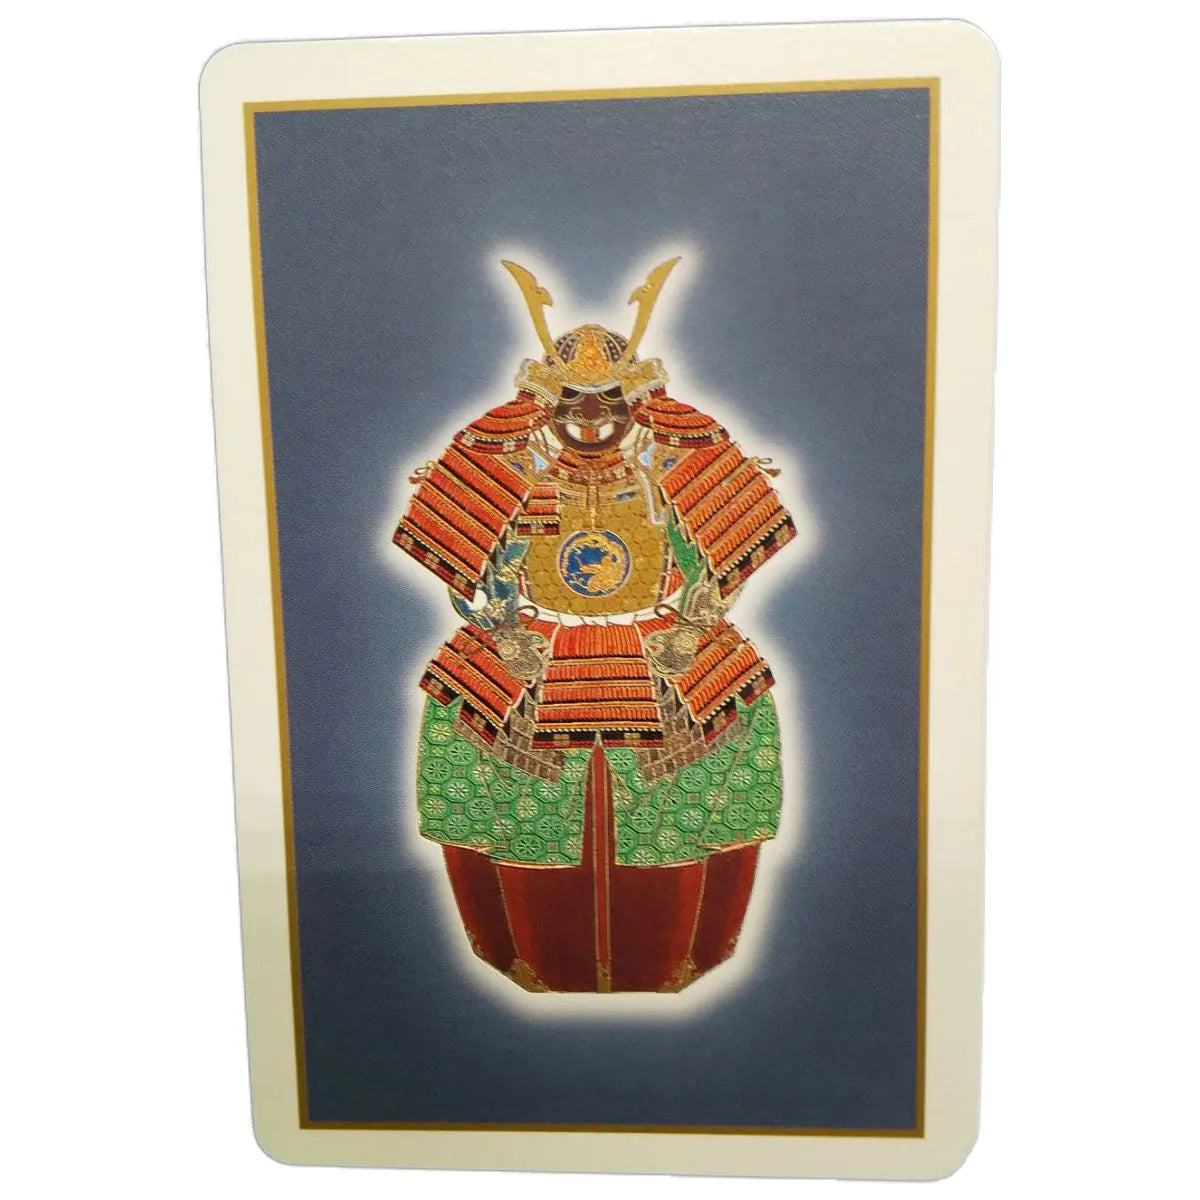 トランプ カード　武将 SAMURAI　54 Prints Collection of the Samurai Pictures